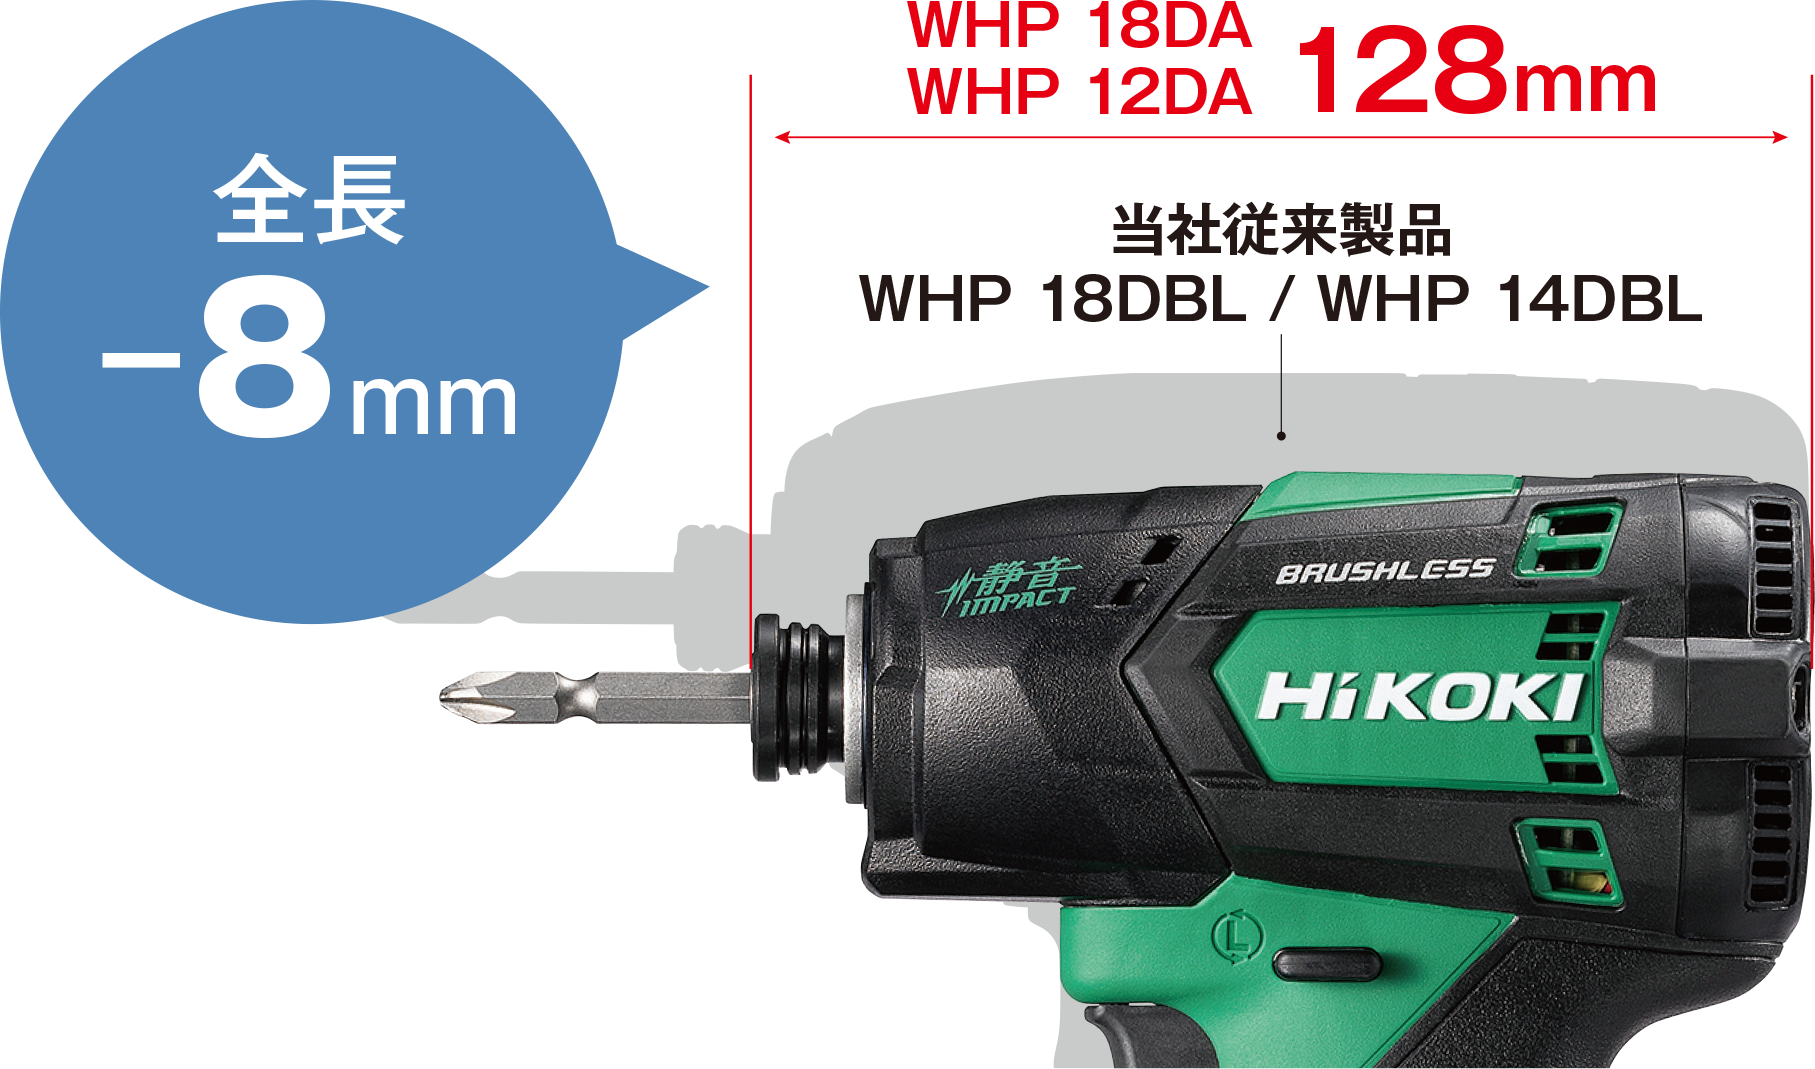 電動工具ブランド「HiKOKI(ハイコーキ)」革新的な「静かさ」を実現したコードレス静音インパクトドライバWHP 12DAとWHP 18DAの2機種を発売開始のサブ画像3